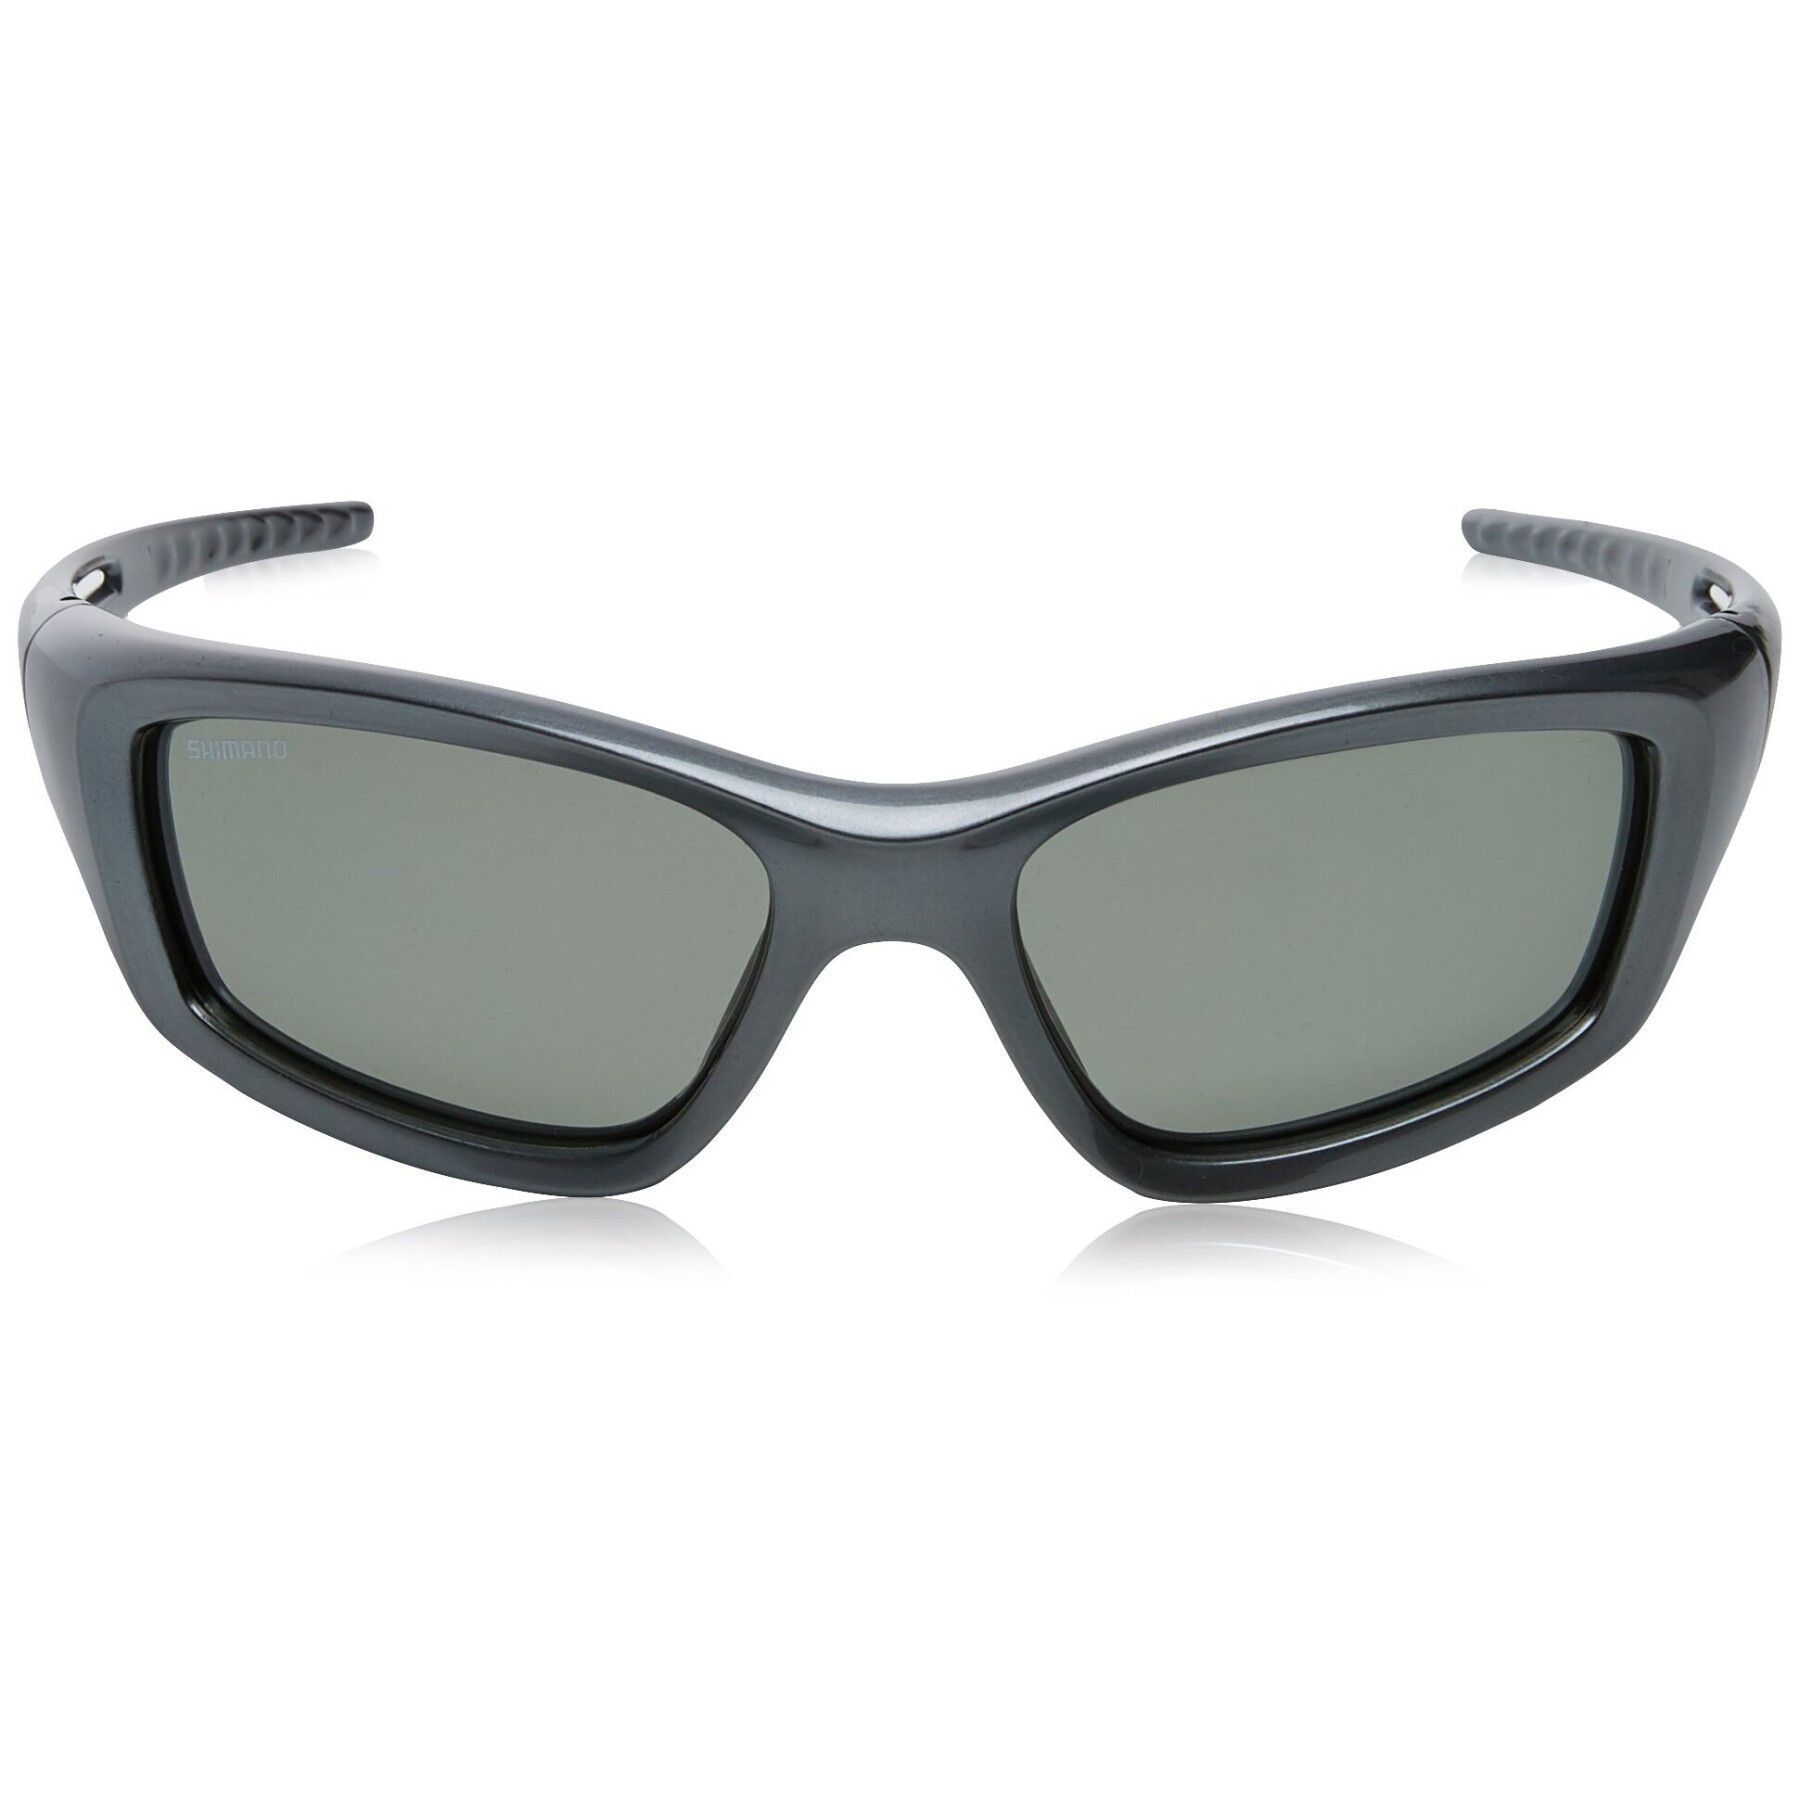 Óculos de sol Shimano Biomaster